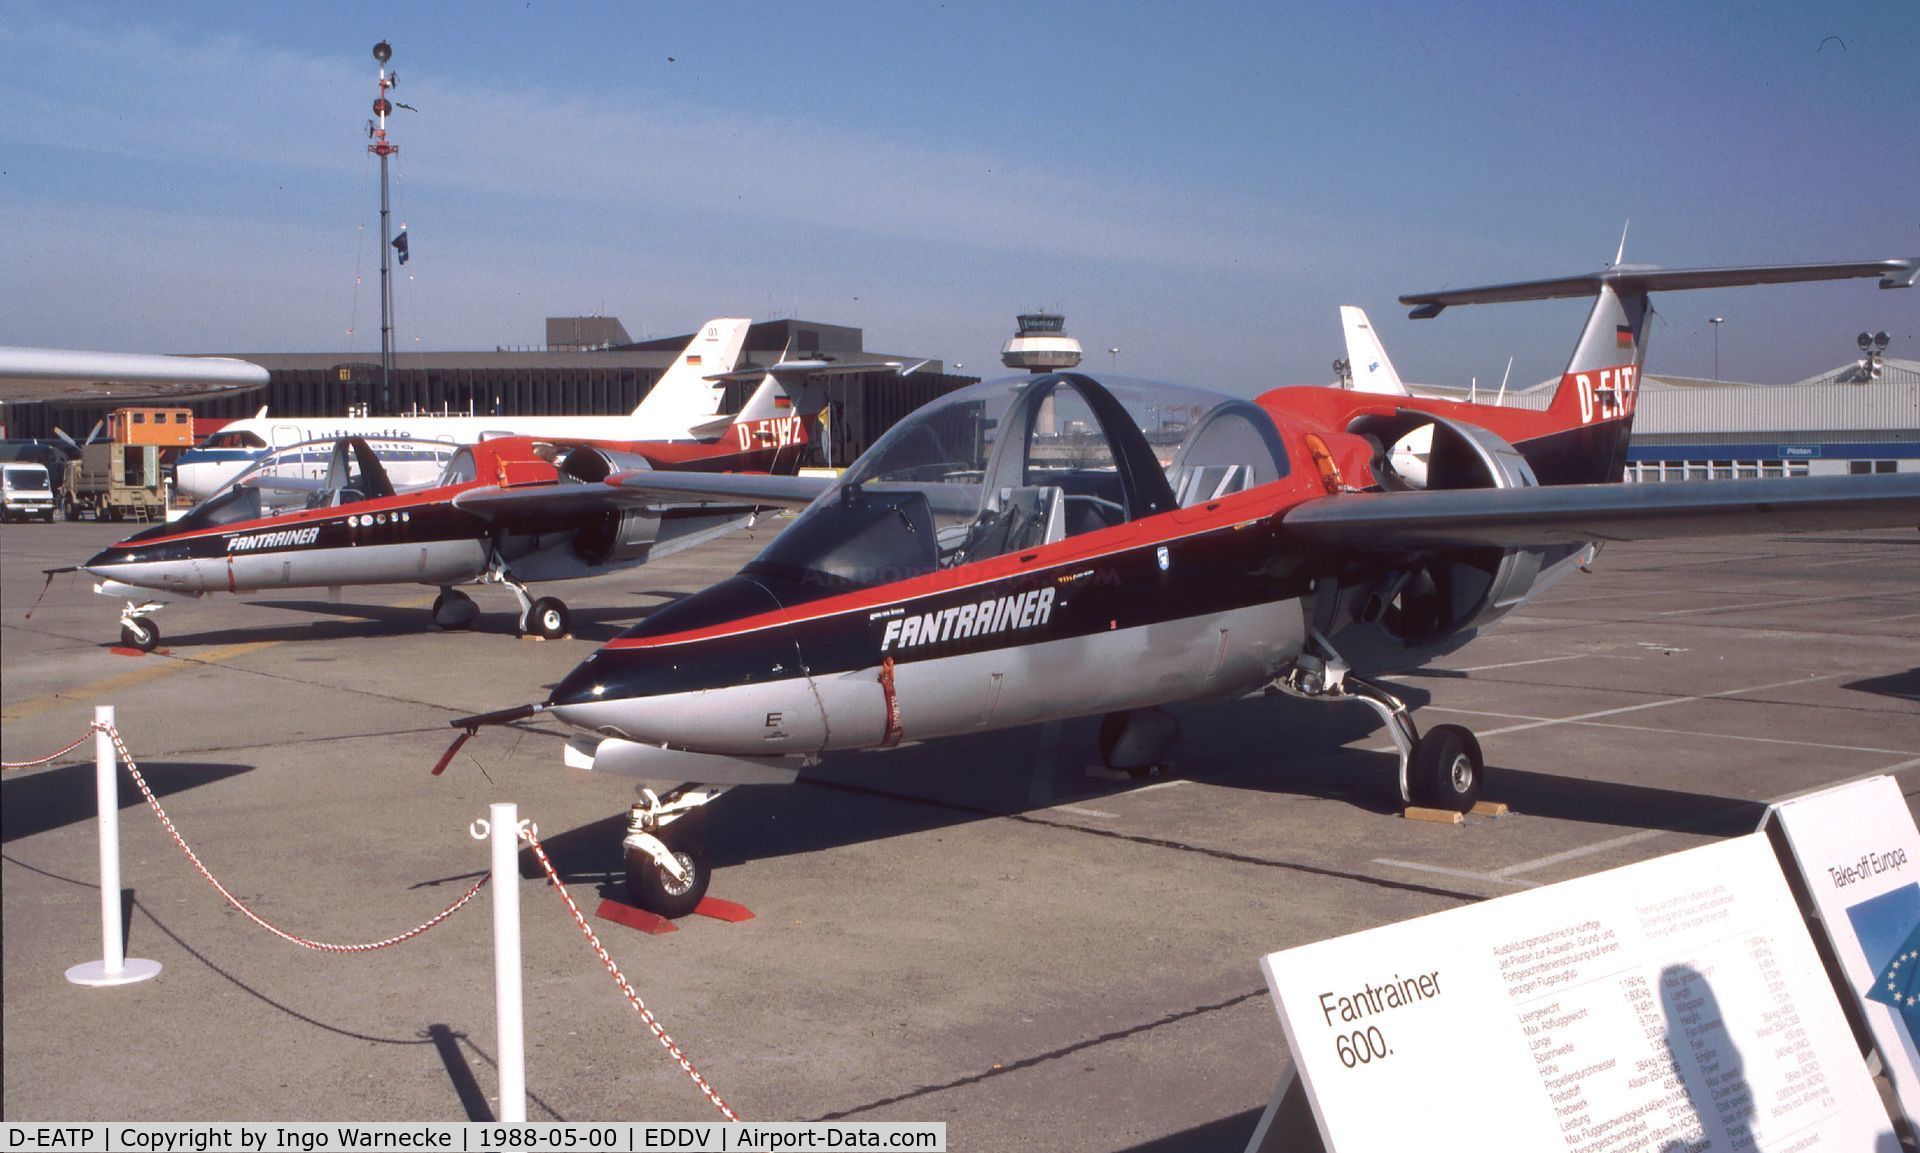 D-EATP, 1985 RFB Fantrainer 400 C/N 011, RFB Fantrainer 400 at the ILA 1988, Hannover